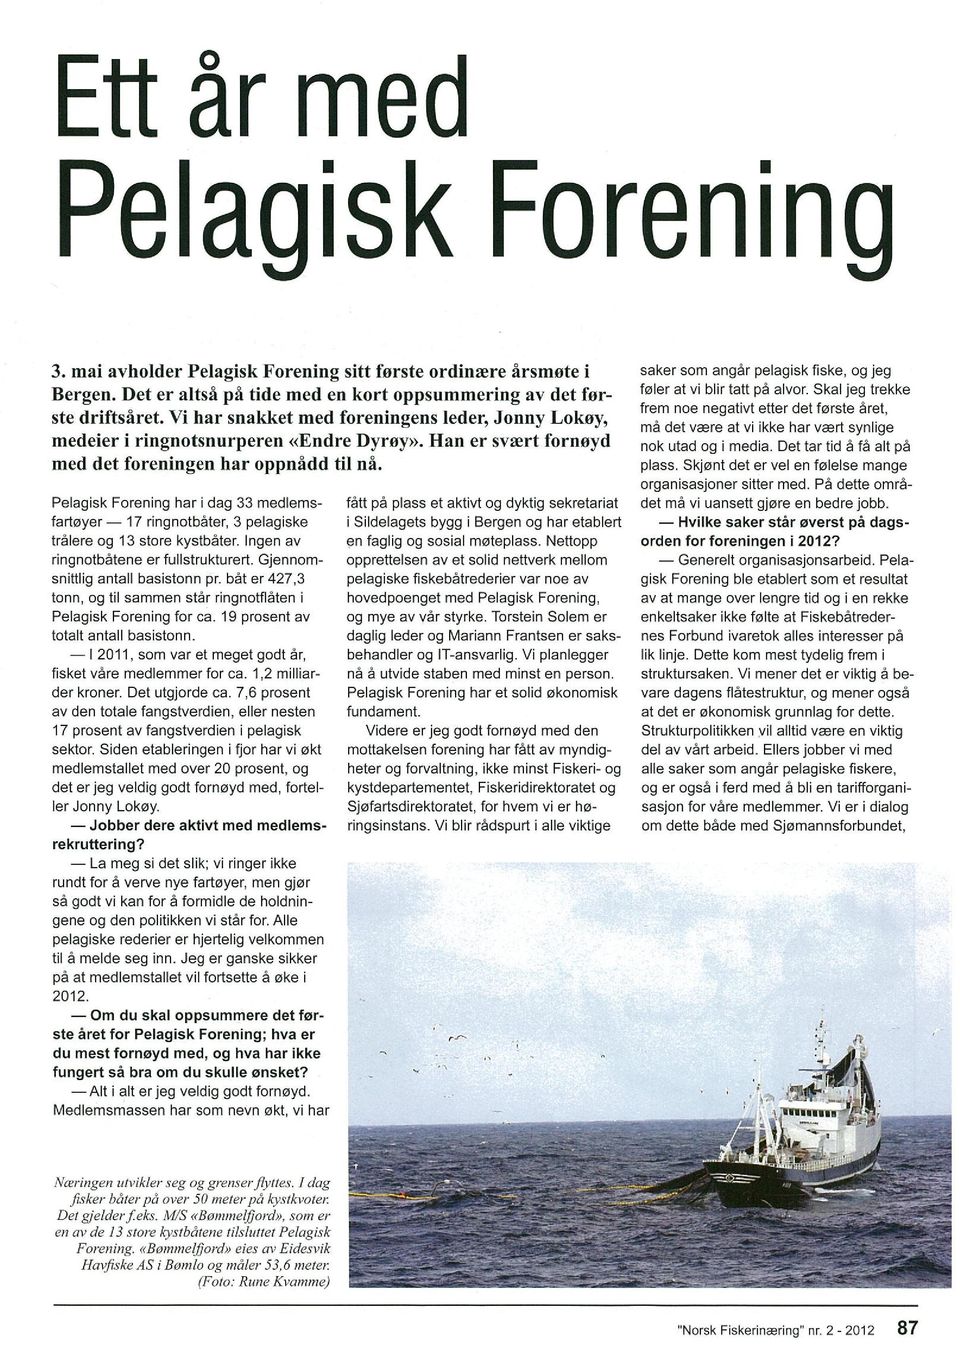 Pelagisk Forening har i dag 33 medlems fartøyer 17 ringnotbåter, 3 pelagiske tralere og 13 store kystbåter. ngen av ringnotbatene er fullstrukturert. Gjennom snittlig antall basistonn pr.